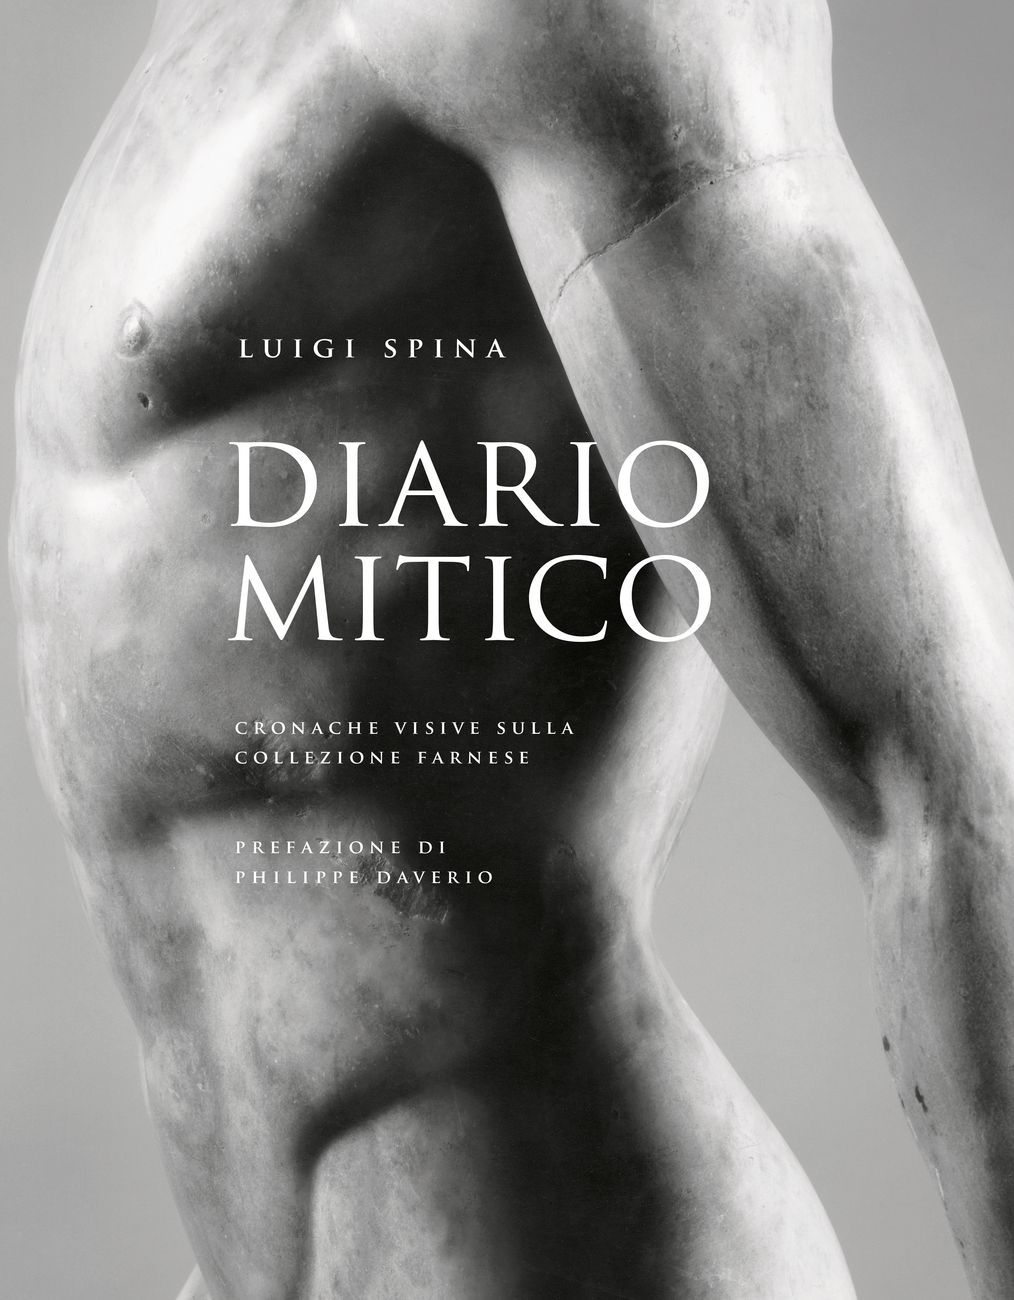 Luigi Spina – Diario mitico. Cronache visive sulla Collezione Farnese (5 Continents, Milano 2017)